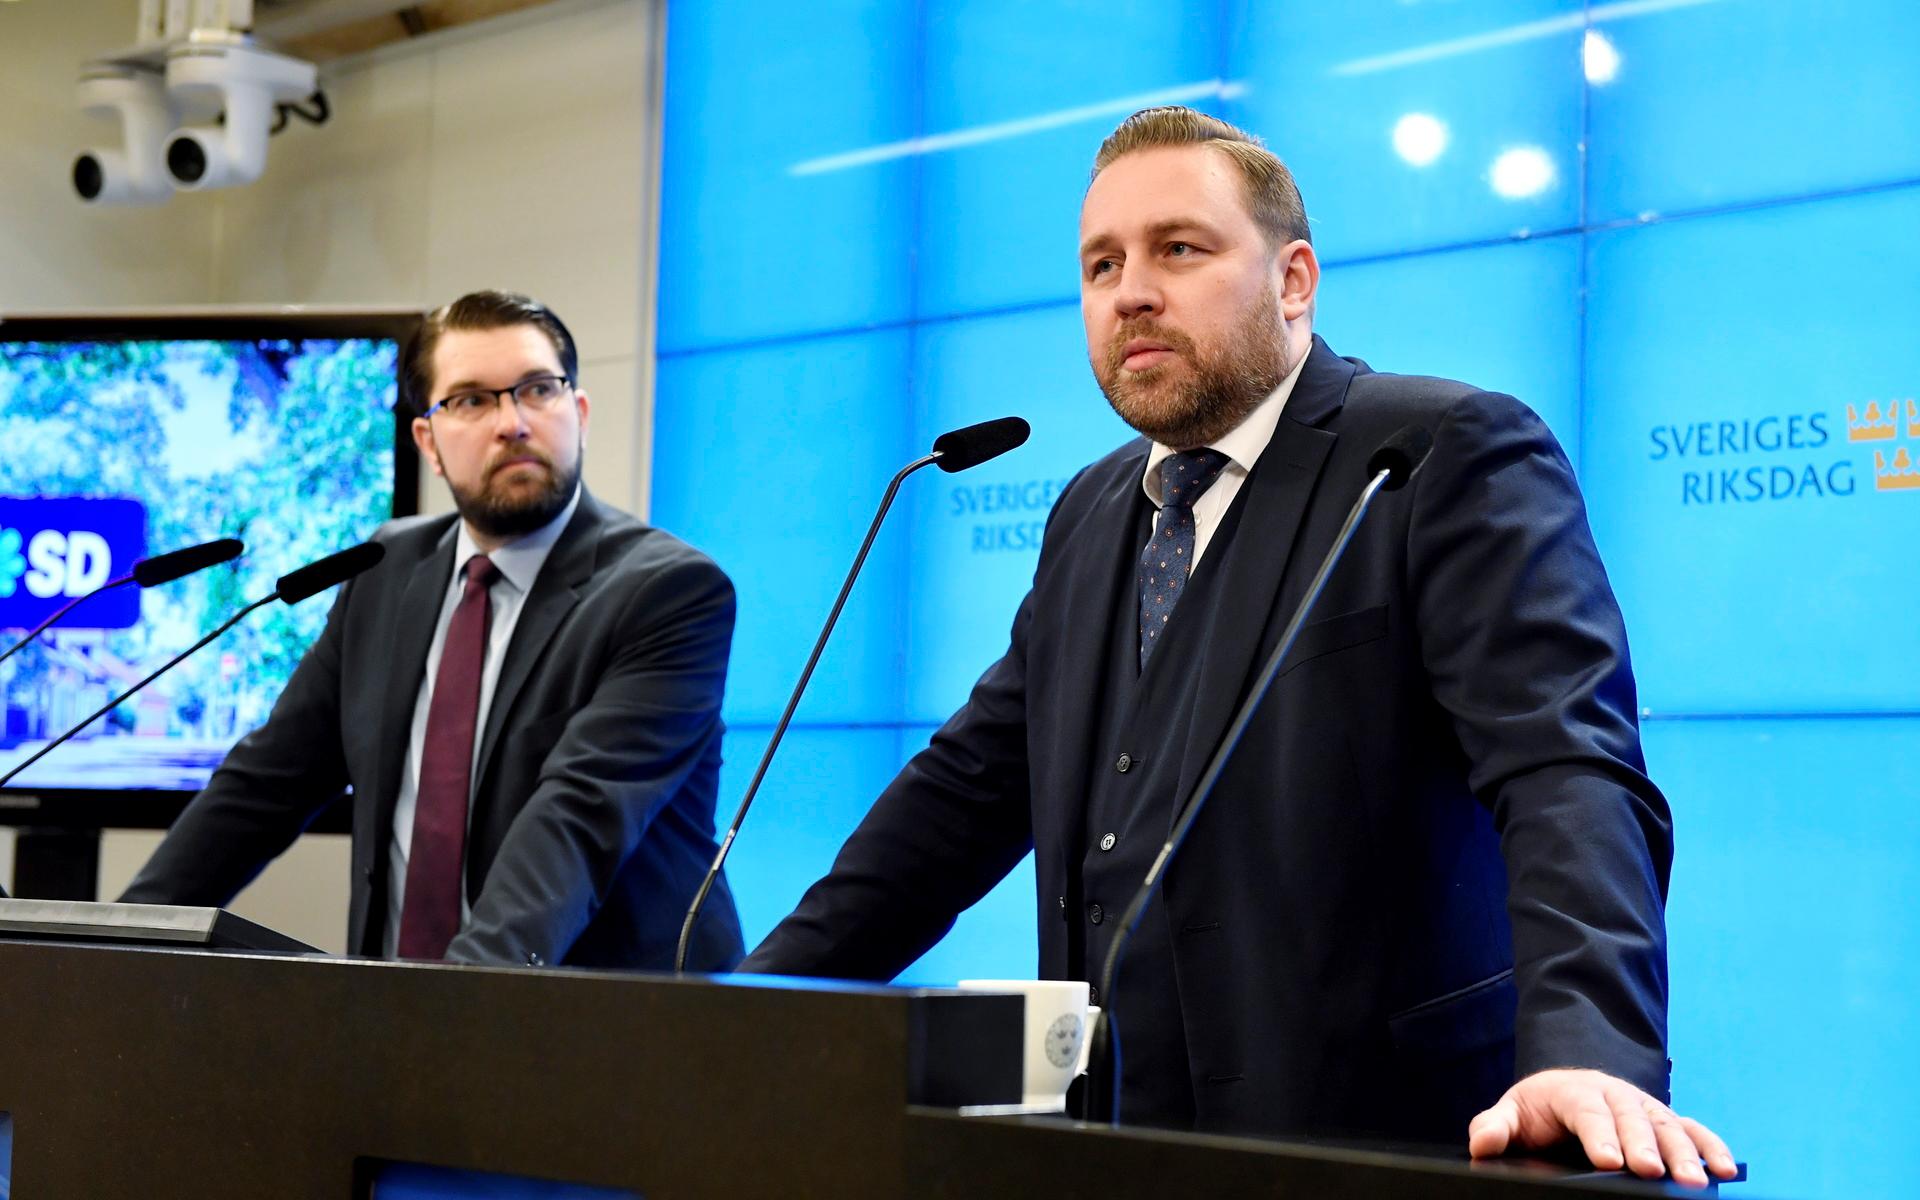 
Sverigedemokraternas partiledare Jimmie Åkesson (SD) presenterade Mattias Karlsson som ny landsbygdspolitisk talesperson för partiet, vid en pressträff i riksdagens presscenter.
